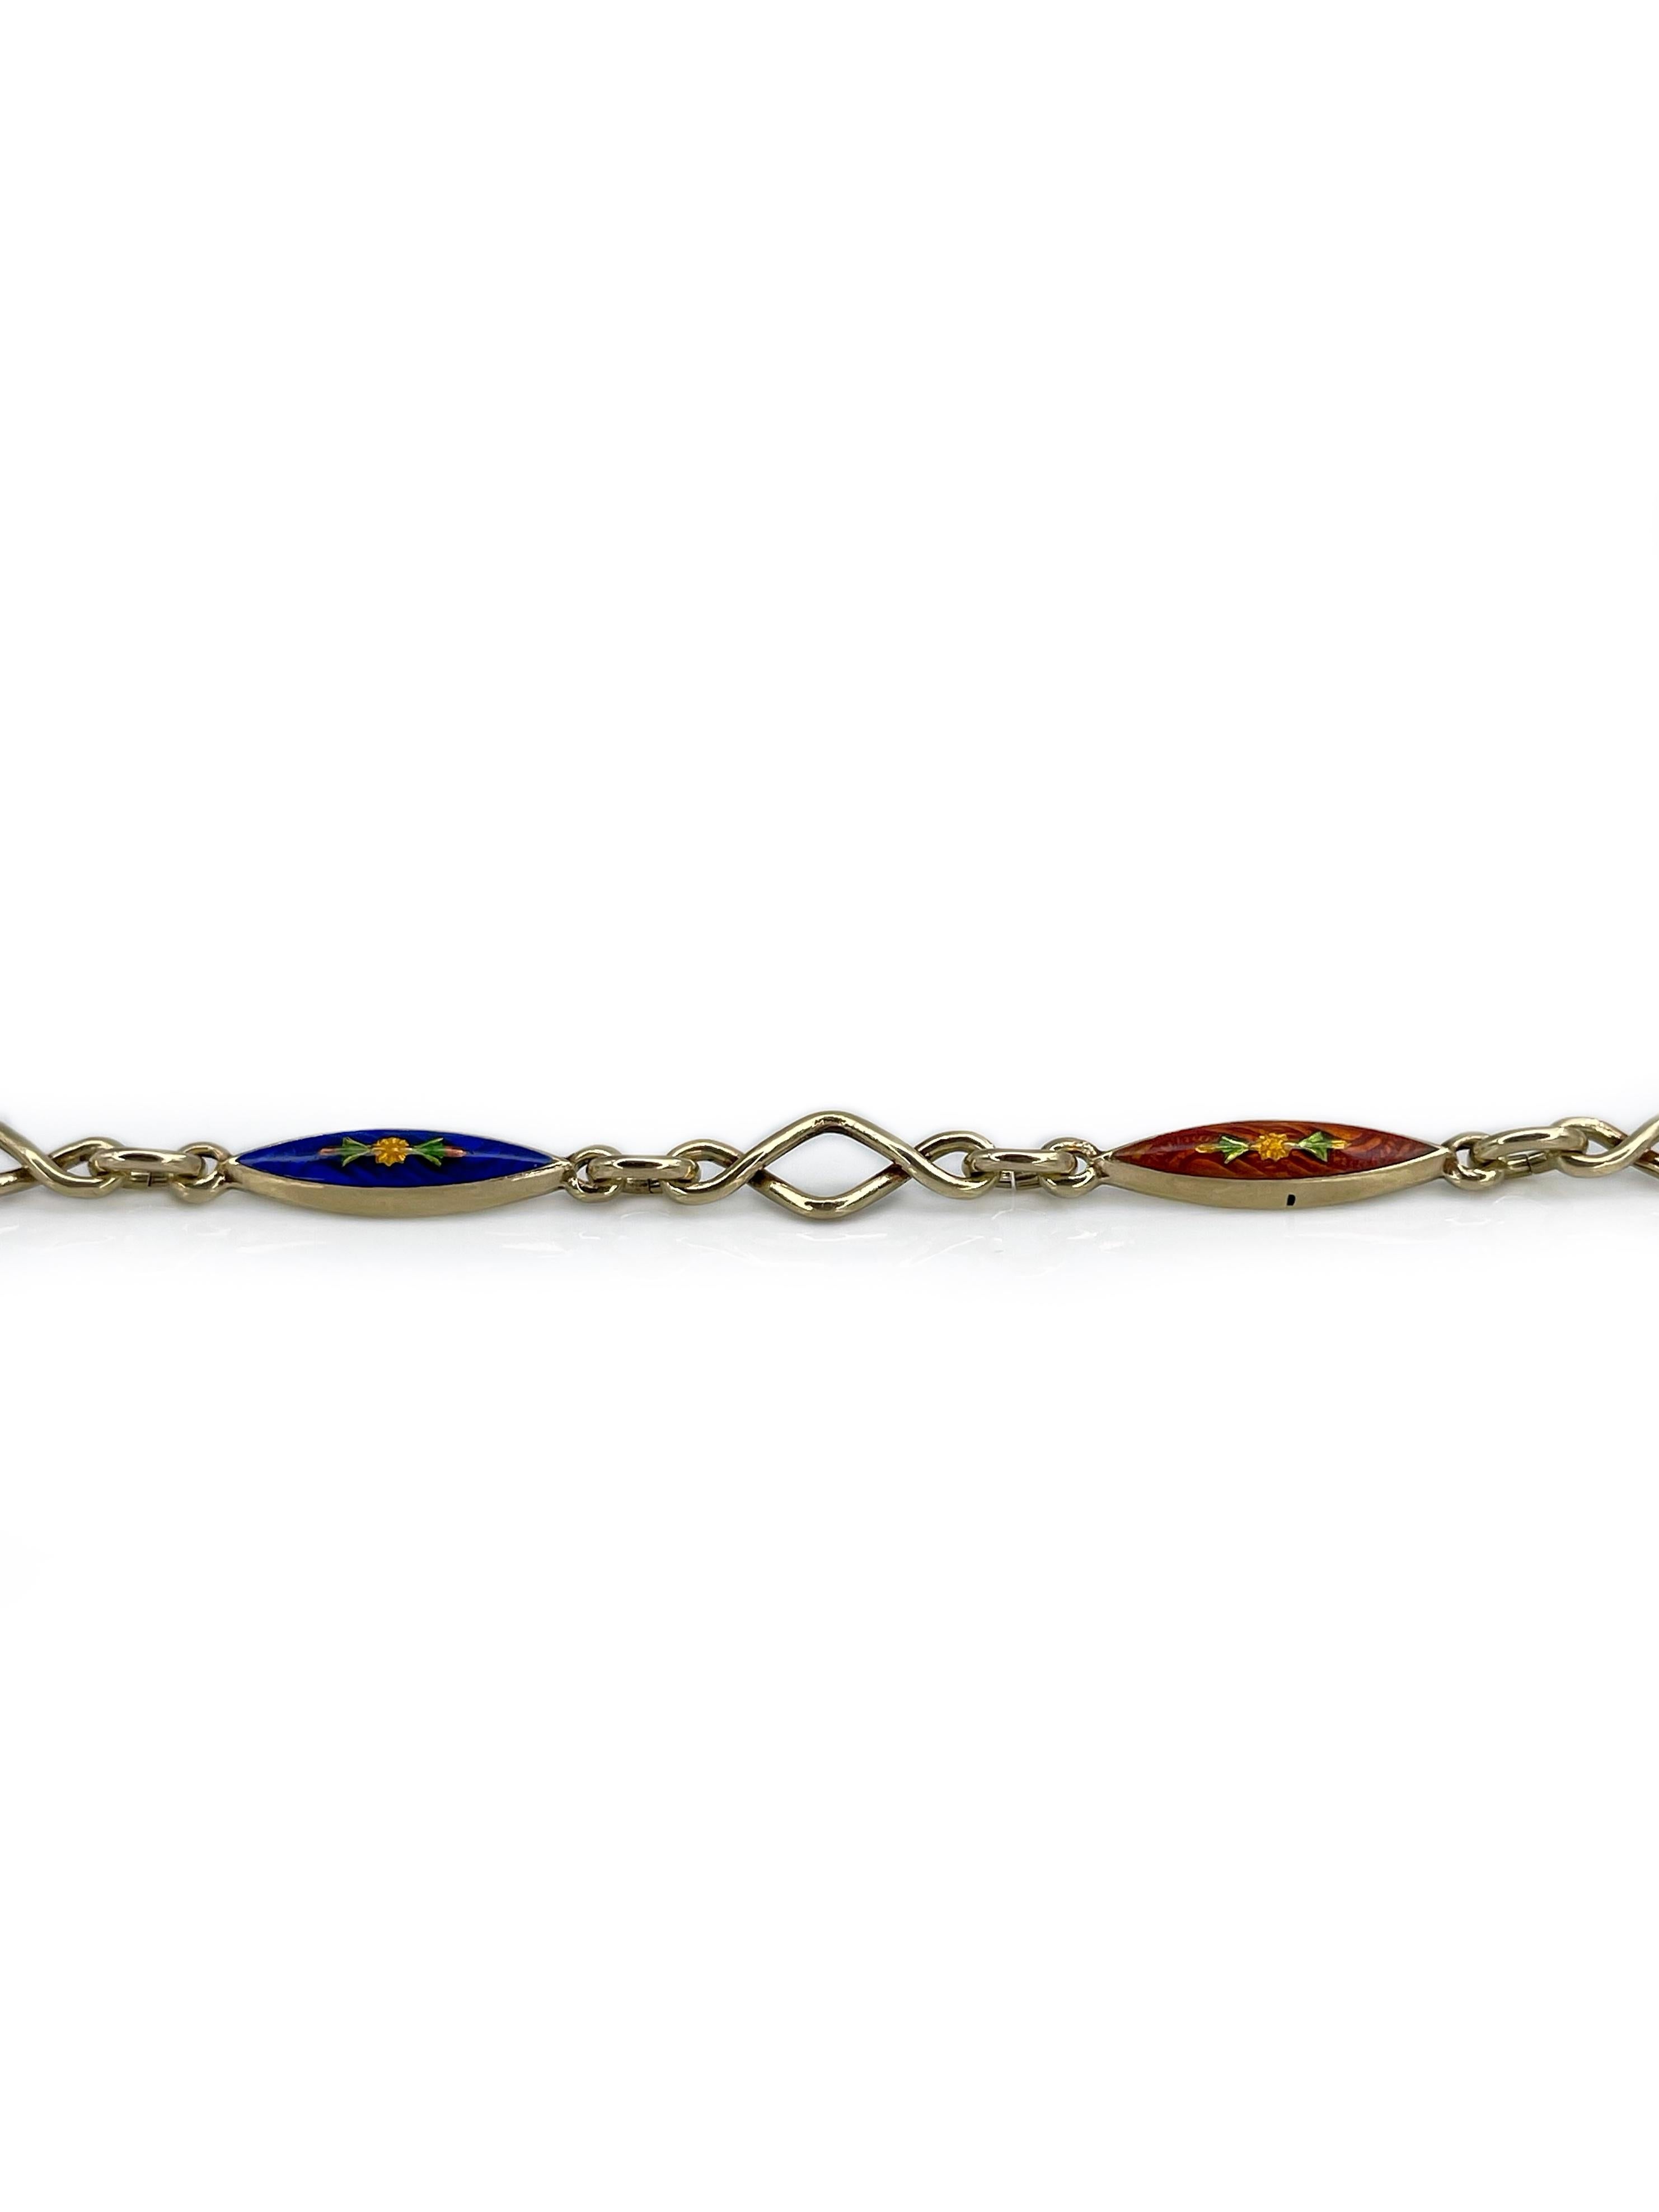 Dies ist eine schöne viktorianische Kette Armband in 14K Gold gefertigt. Es zeigt rote und blaue guillochierte Emaille-Segmente mit Blumenmotiven. 

Hat einen sicheren Verschluss.

Gewicht: 4,95g
Länge: 19 cm

 ---

Wenn Sie Fragen haben, können Sie